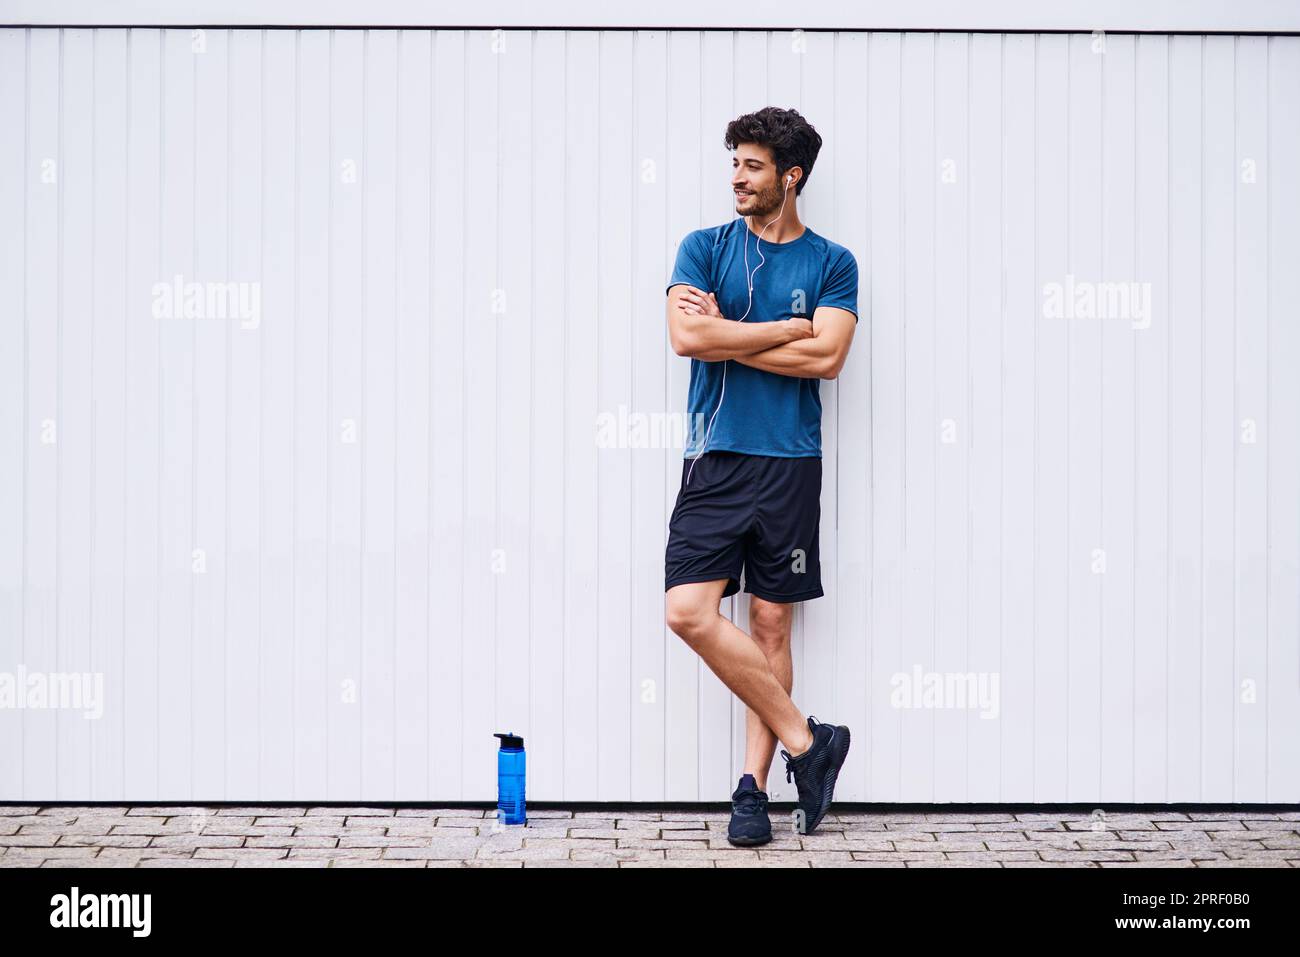 Ein cooles Gefühl von Casual während seiner Fitness-Reise. Ein sportlicher junger Mann, der an einer weißen Wand steht. Stockfoto